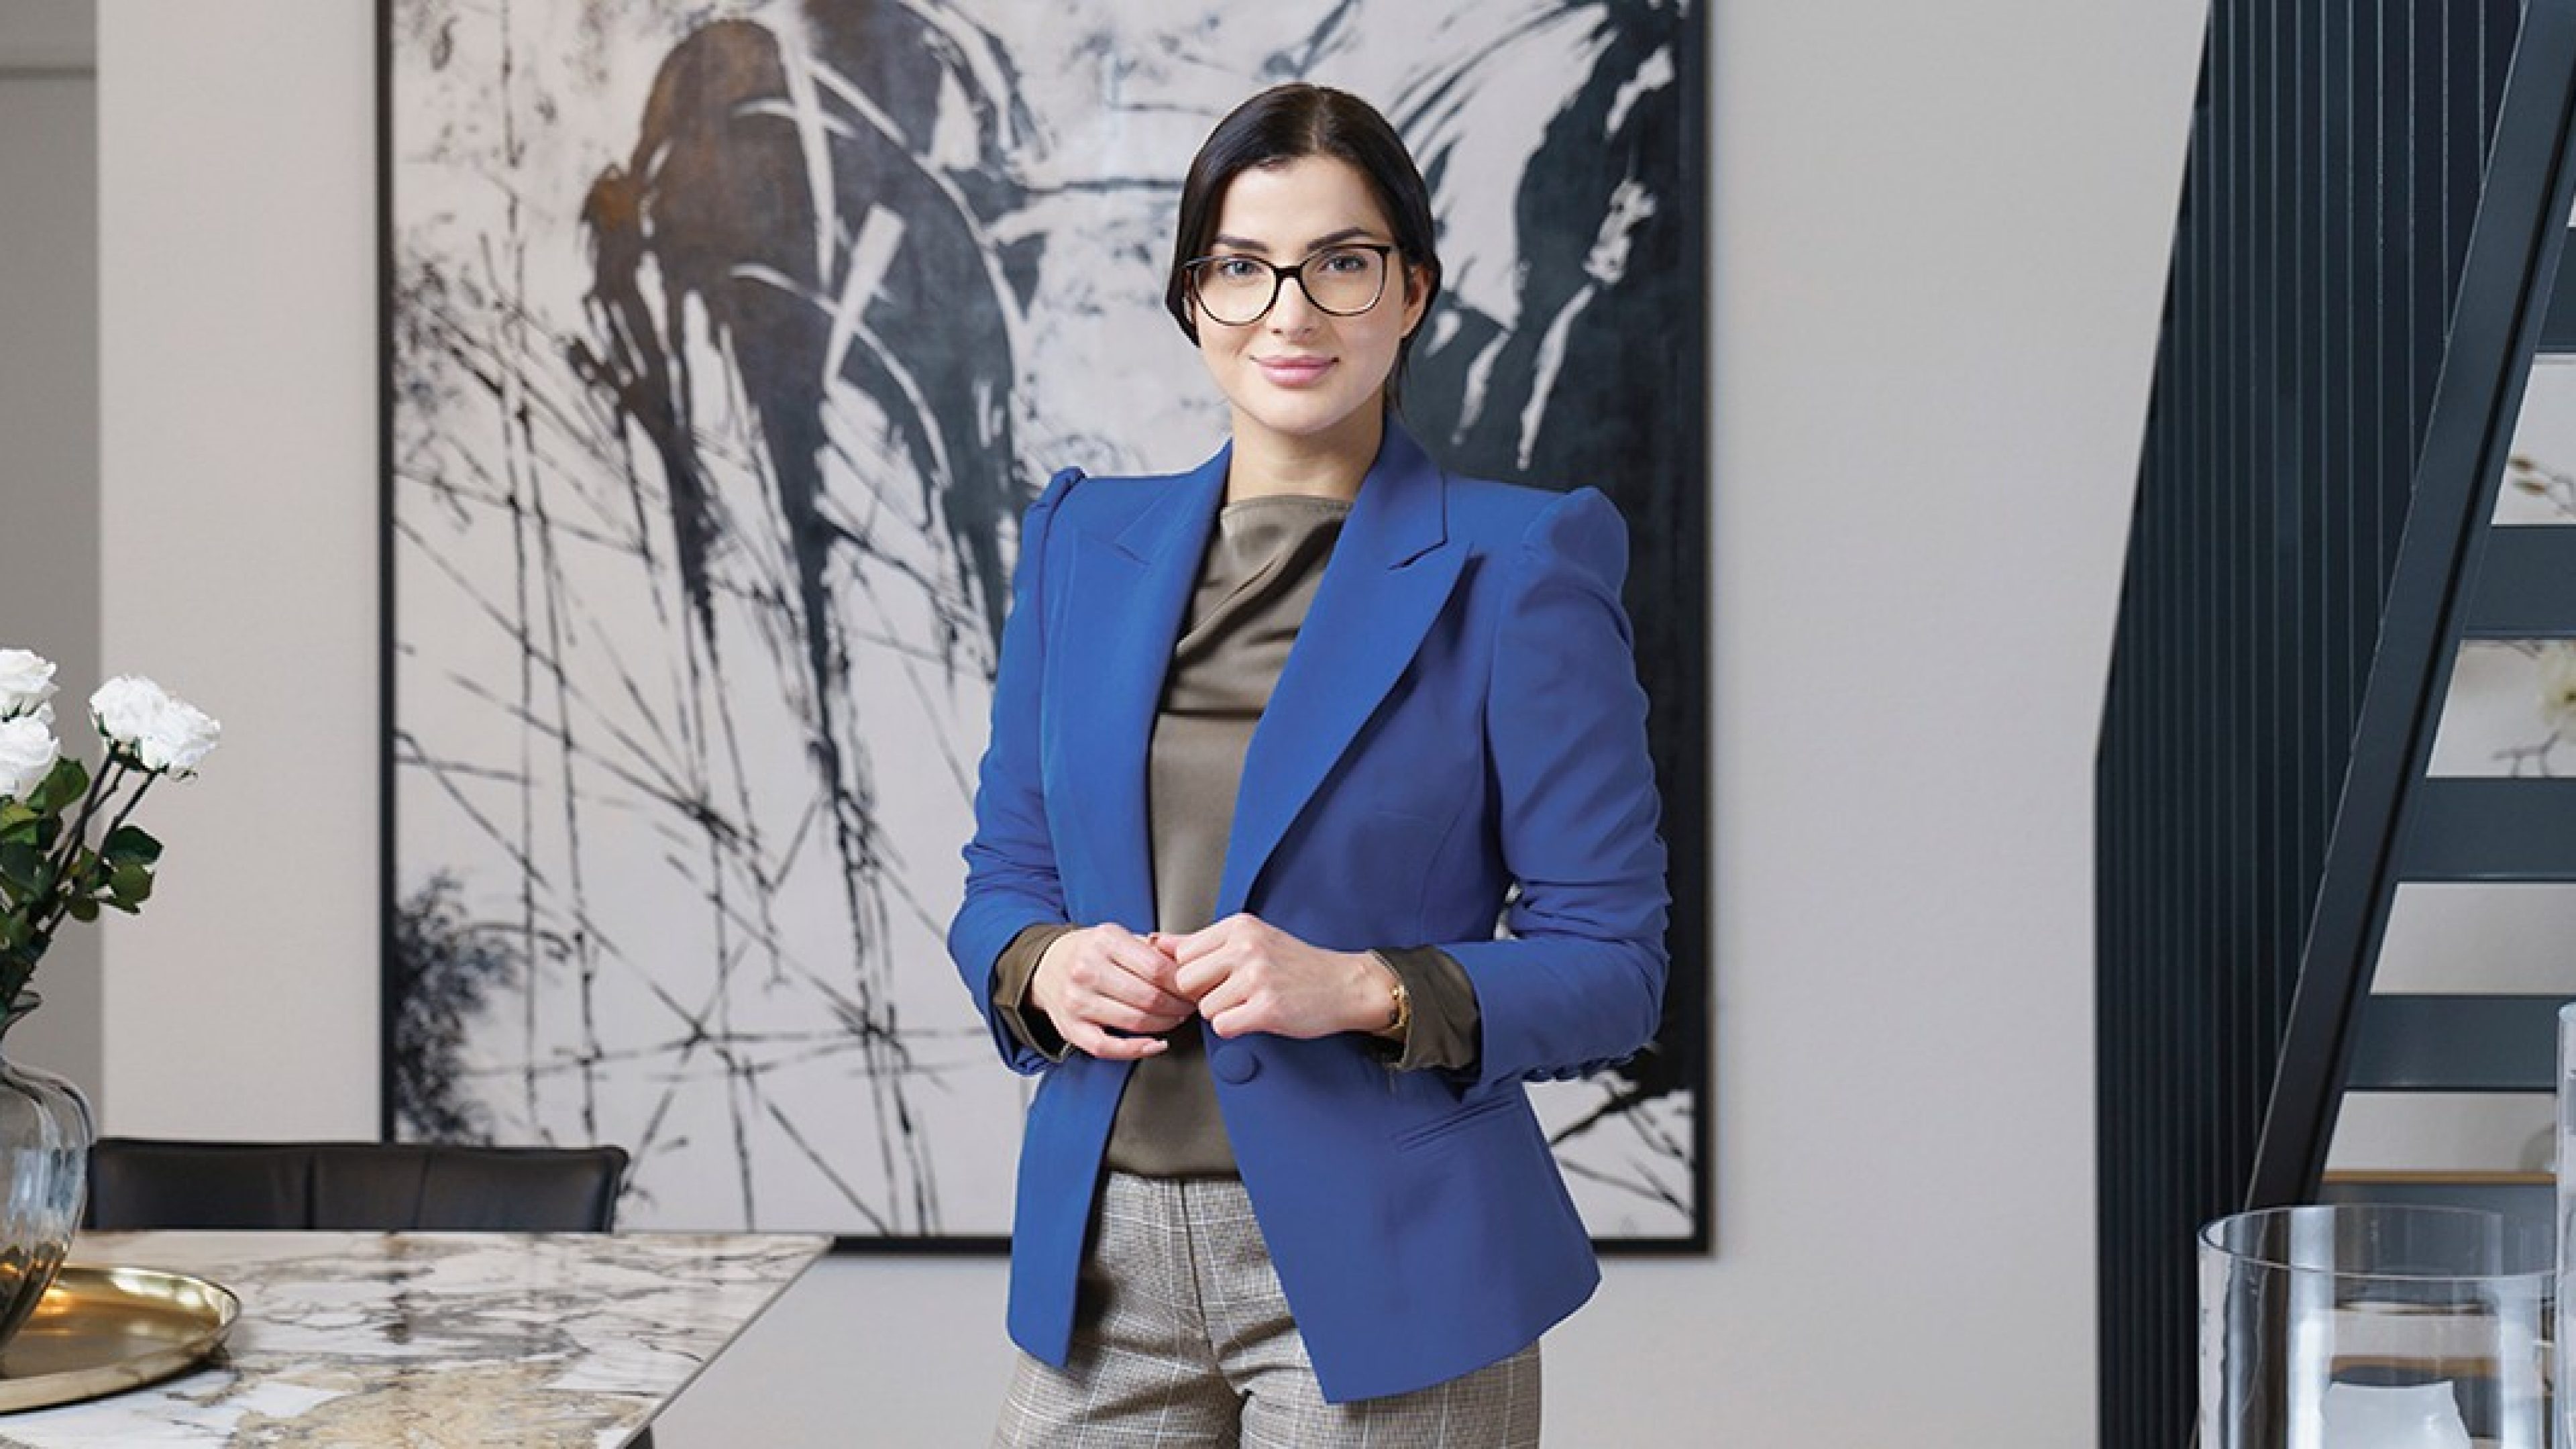 Une femme avec des lunettes en tenue de bureau se tient devant une œuvre d’art et regarde la caméra